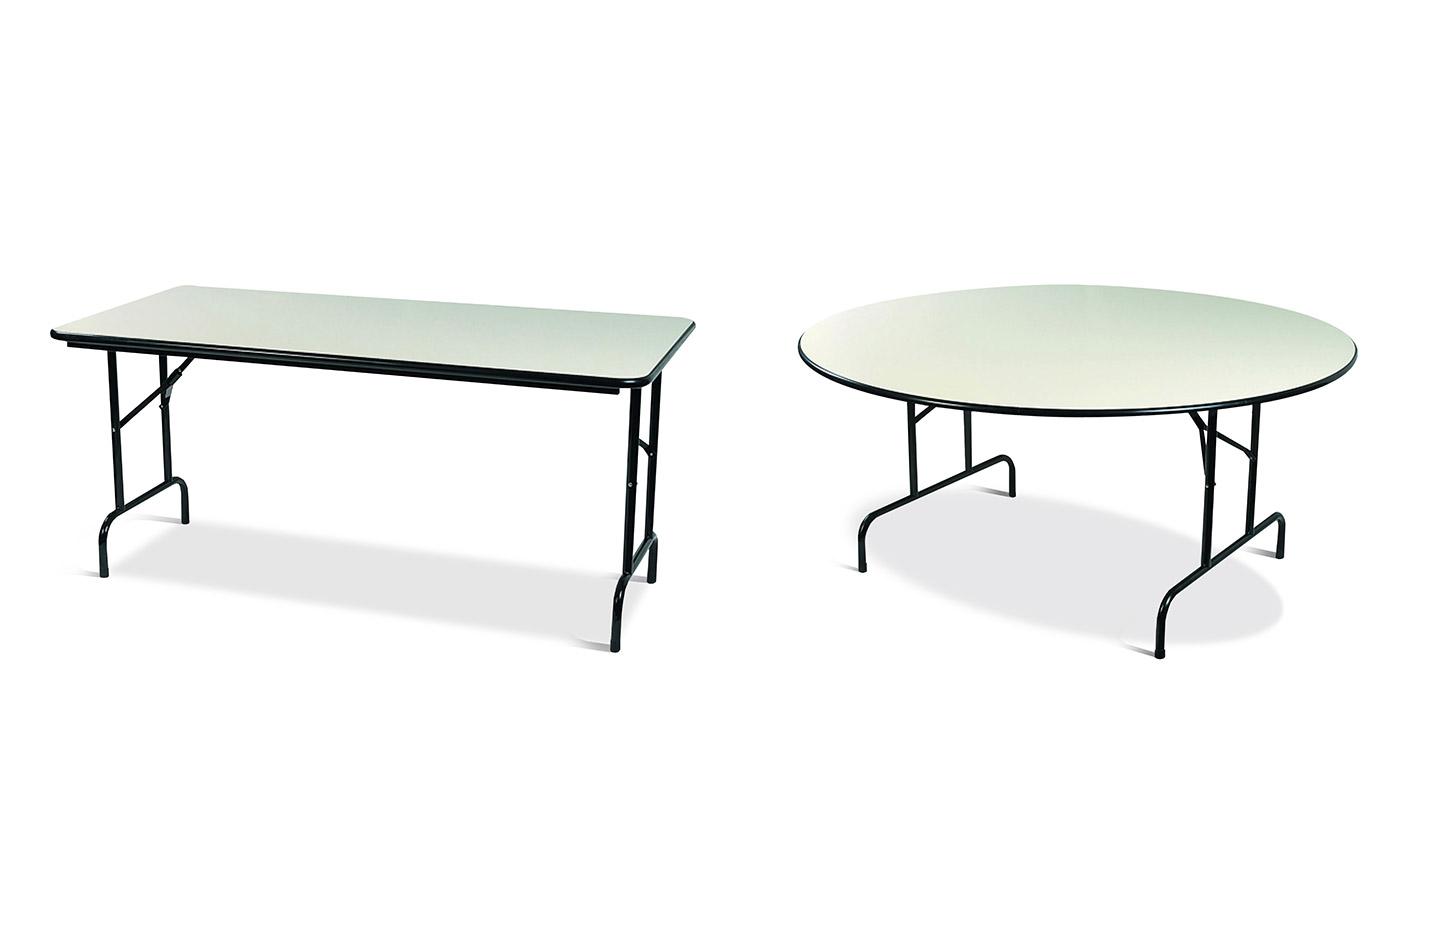 Table pliante rectangulaire ronde ou demi-lune, Fabrication Française, gamme Cormier - France Bureau